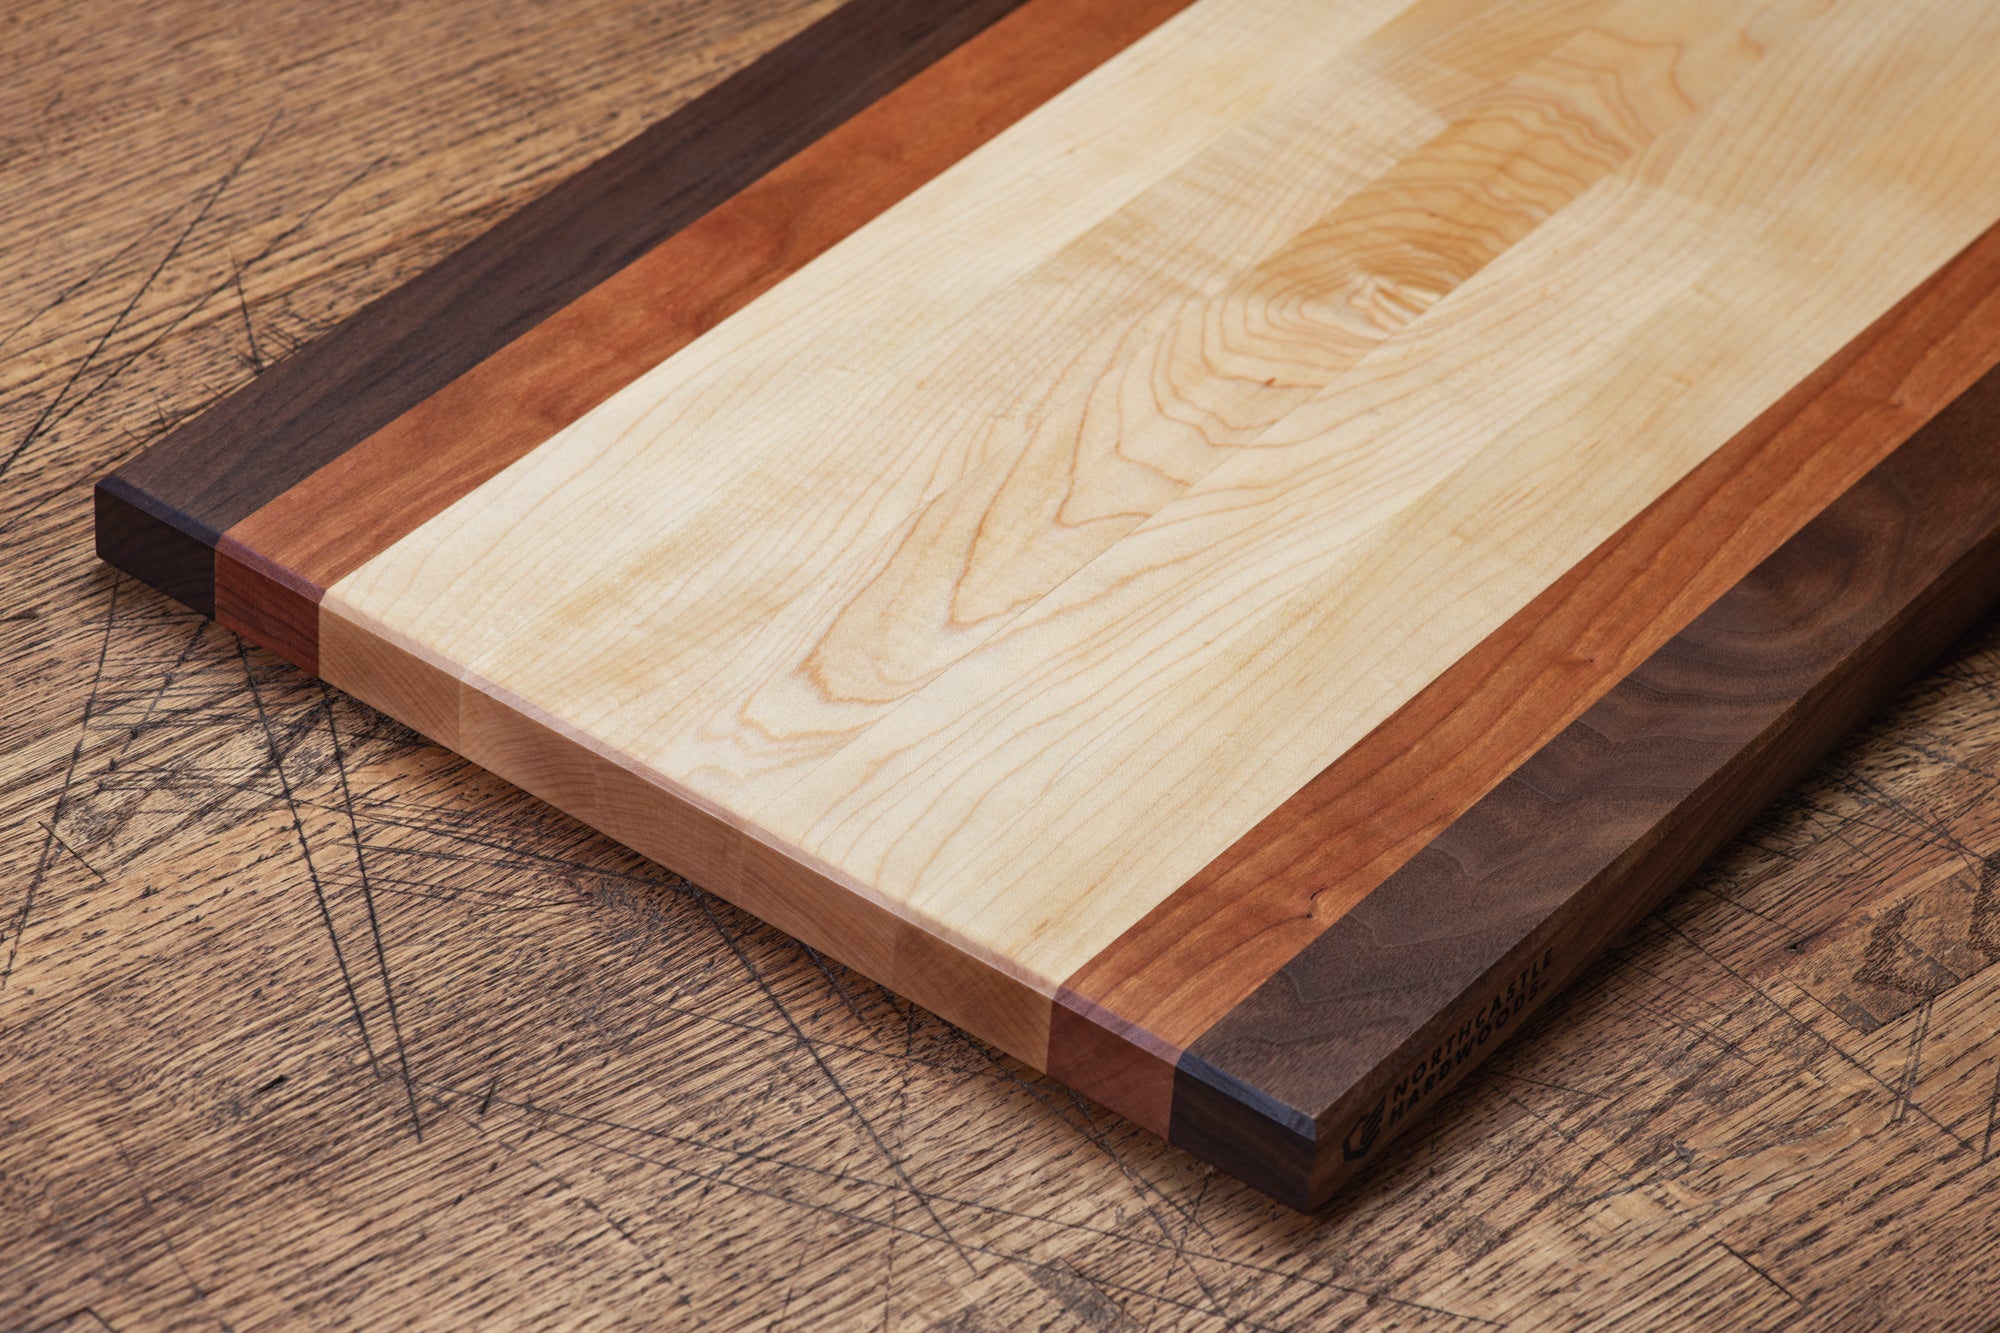 Walnut and Maple Wooden Cutting Board 11x17, 9x12 DIY Wood Crafts